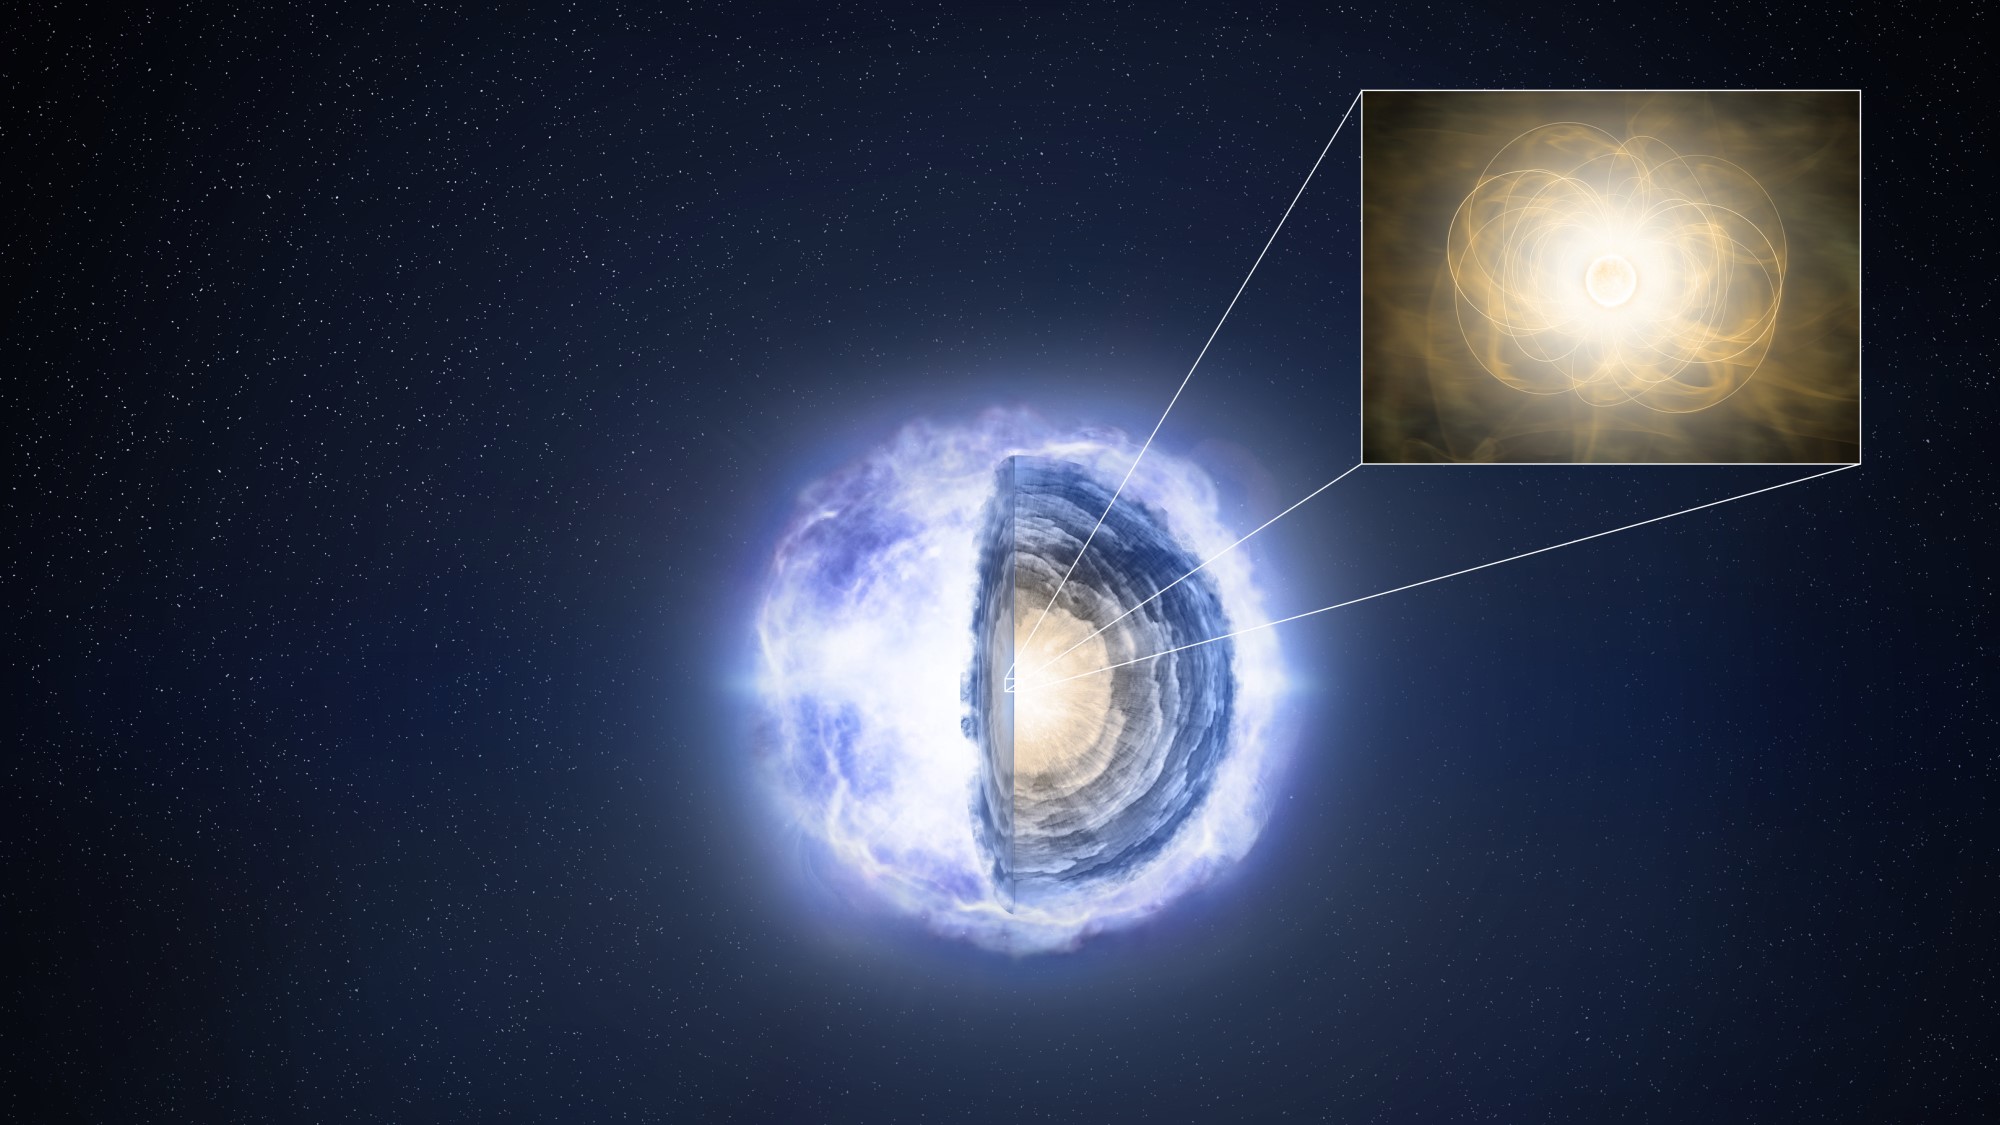 neutron star collapse